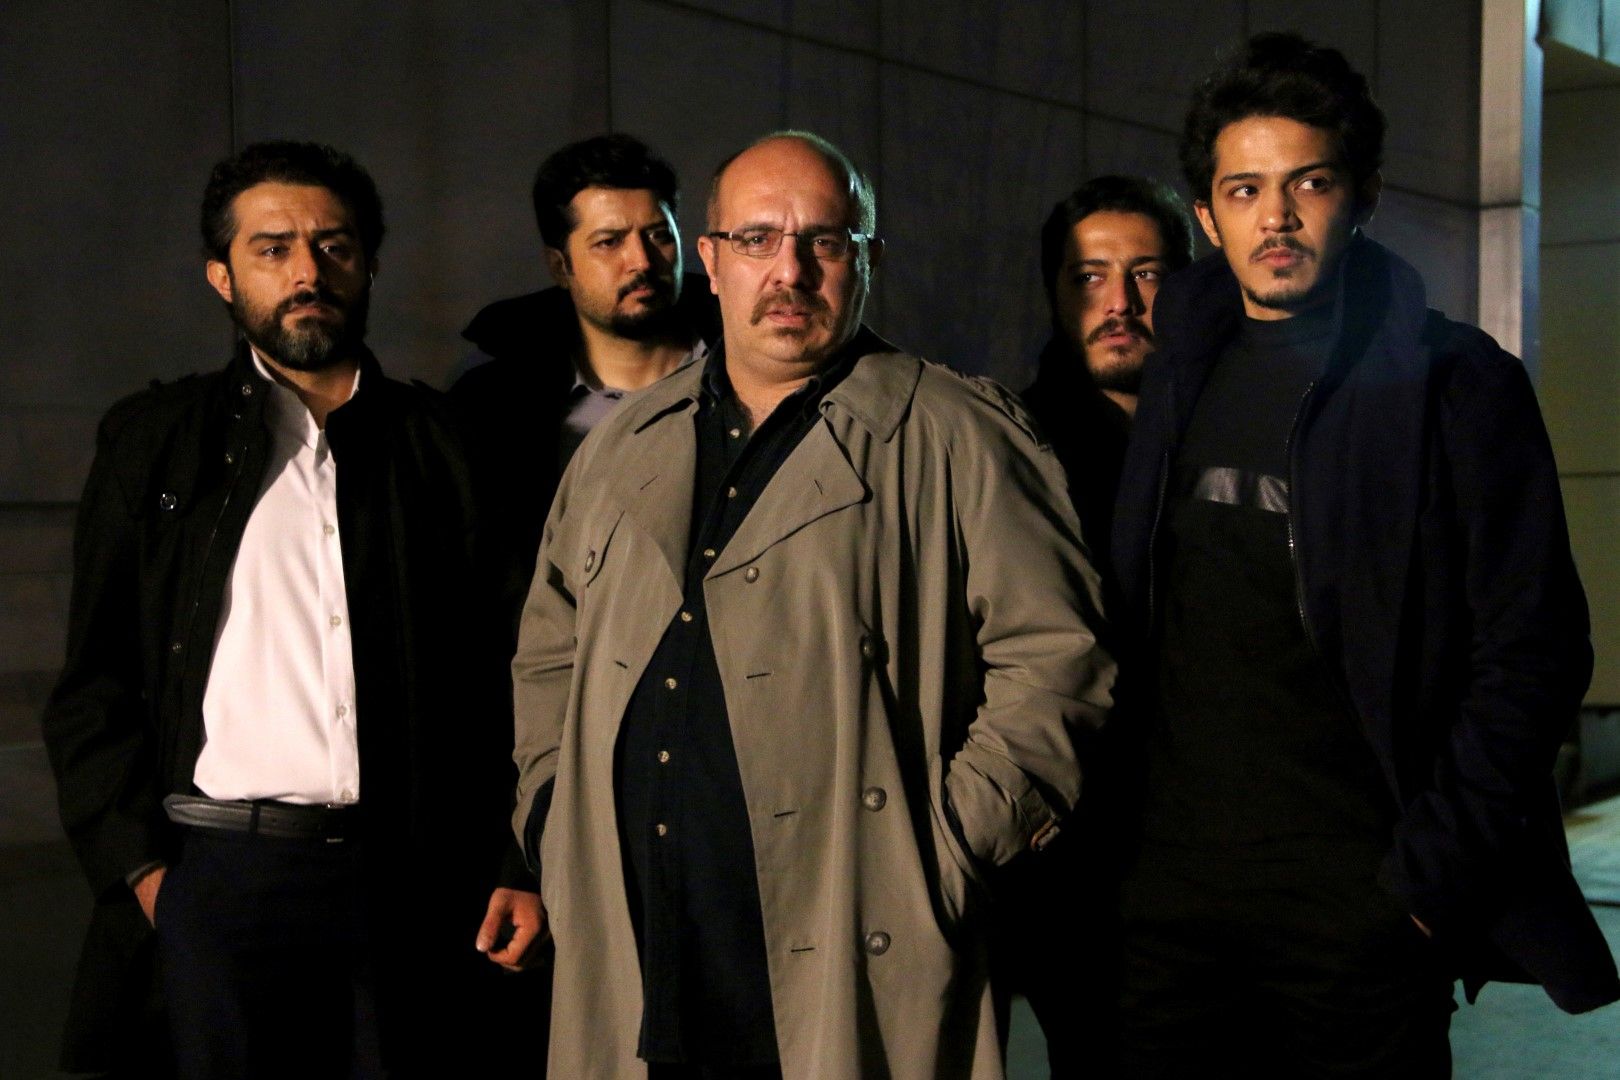 Иранската телевизия показа филм, в който местен актьор (на преден план) играе ролята на Джейсън Резаян, бивш кореспондент на в. "Вашингтон пост" в Техеран